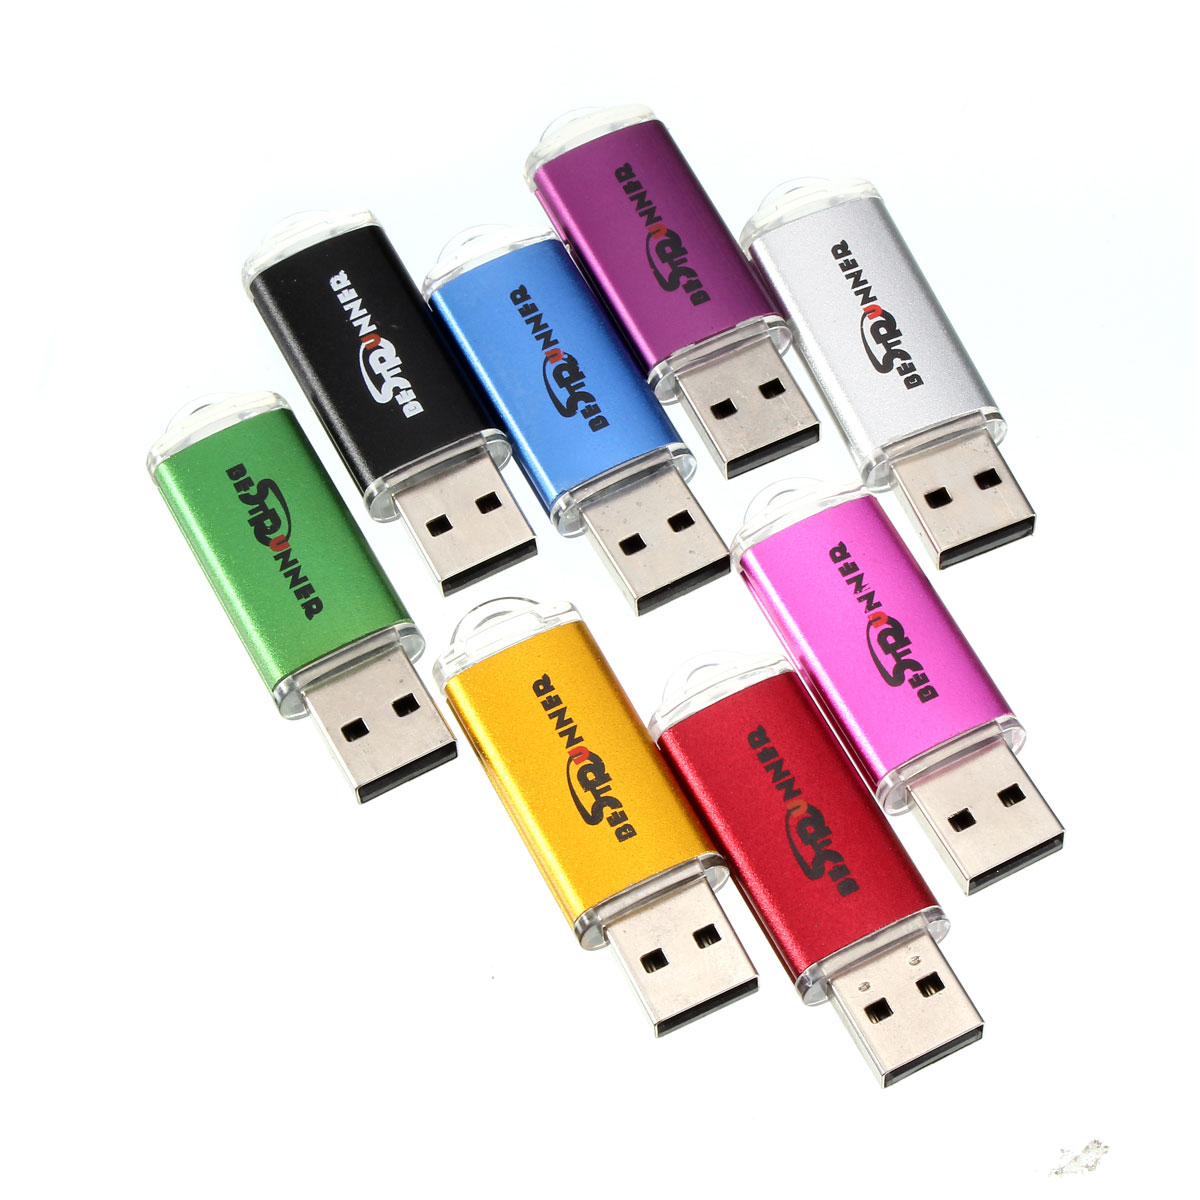 Bestrunner 32GB USB 2.0 Flash Drive Candy Color Memory U Disk 